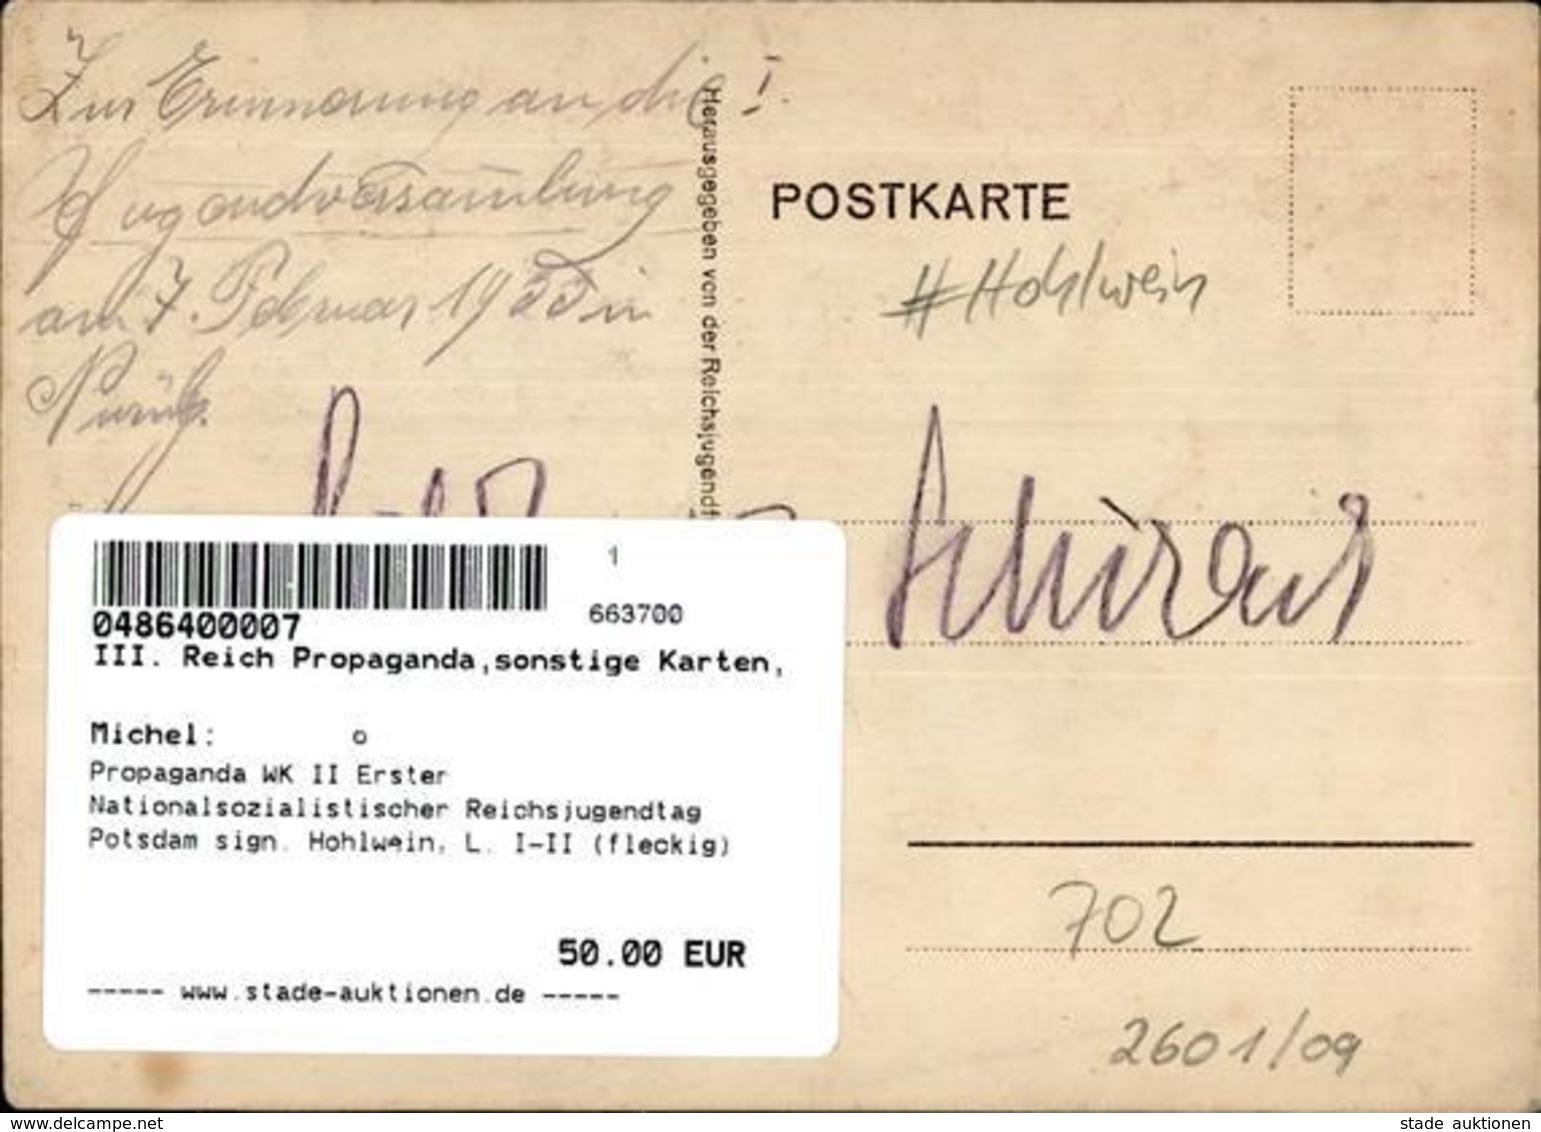 Propaganda WK II Erster Nationalsozialistischer Reichsjugendtag Potsdam Sign. Hohlwein, L. I-II (fleckig) - Weltkrieg 1939-45